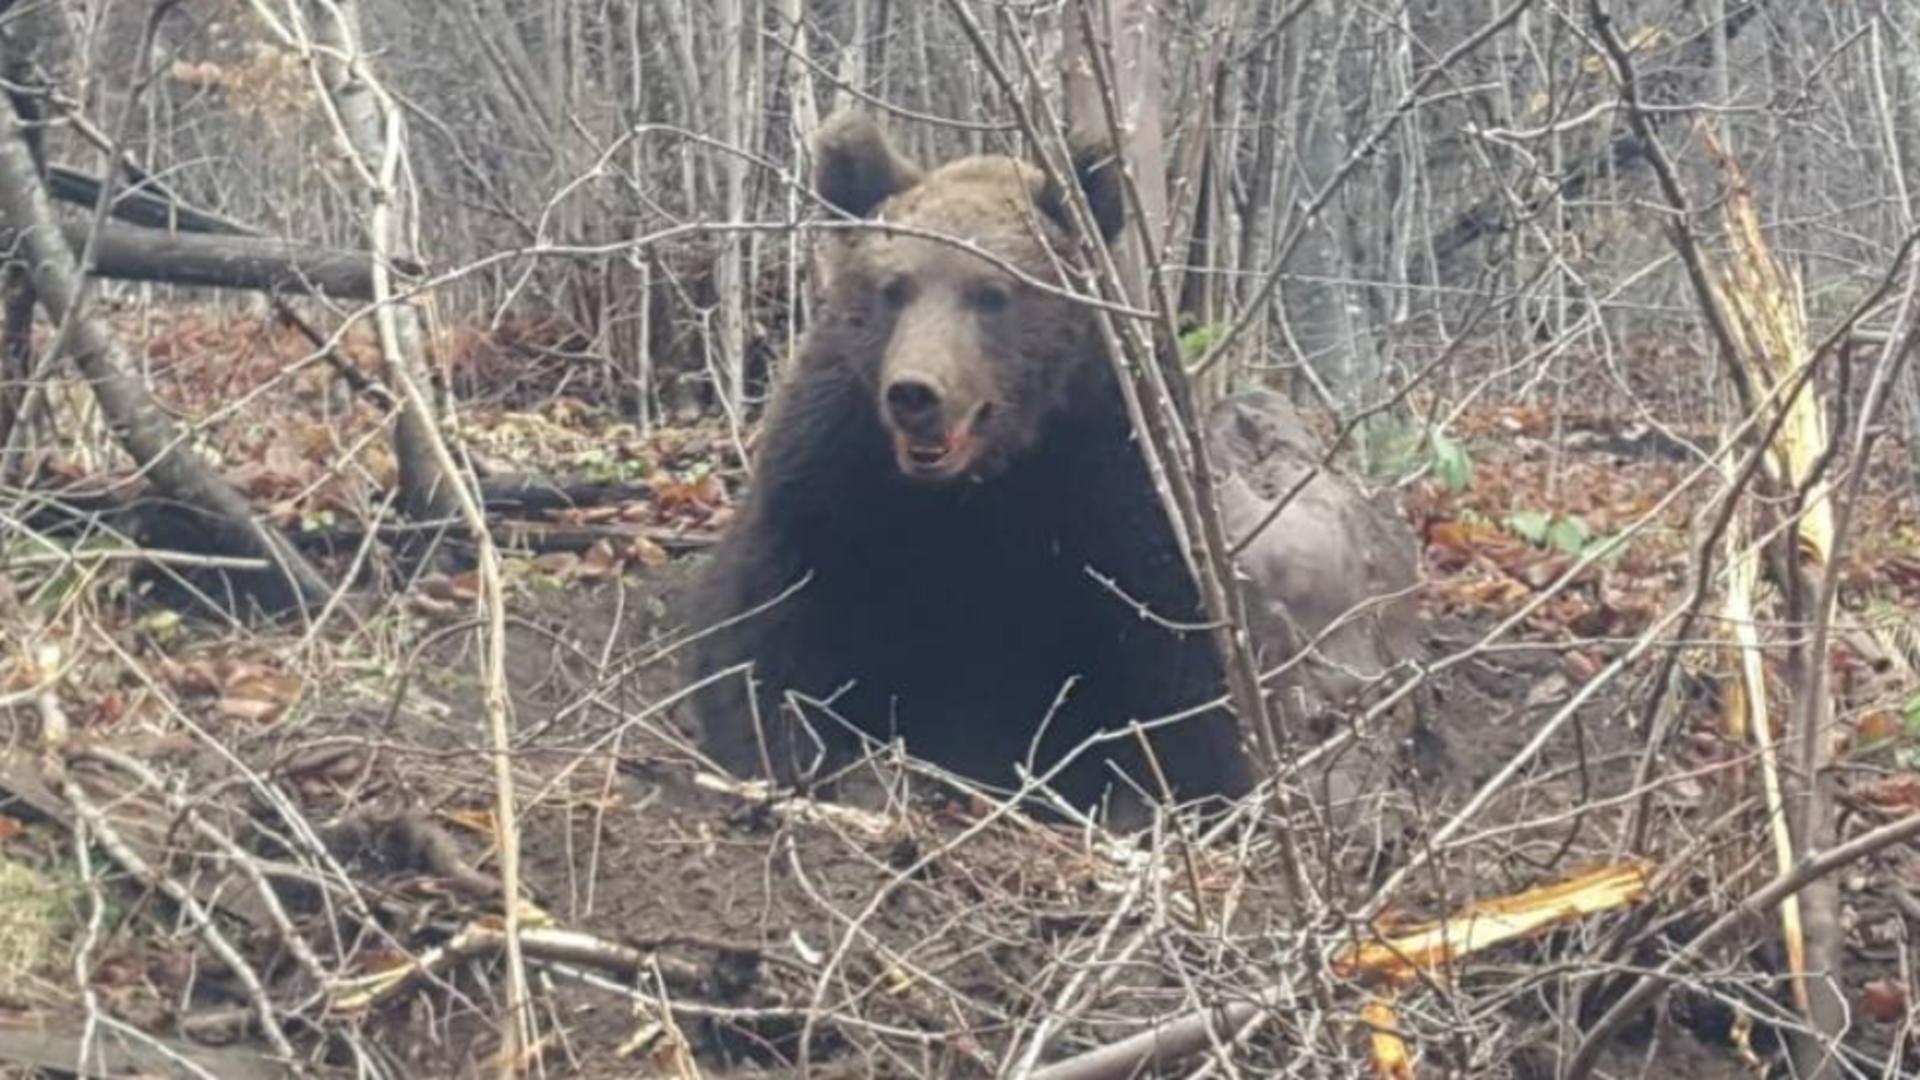 Doi bărbați vânători au fost atacați de urs în Bistrița-Năsăud - Rănile sunt grave, inclusiv la nivelul feței